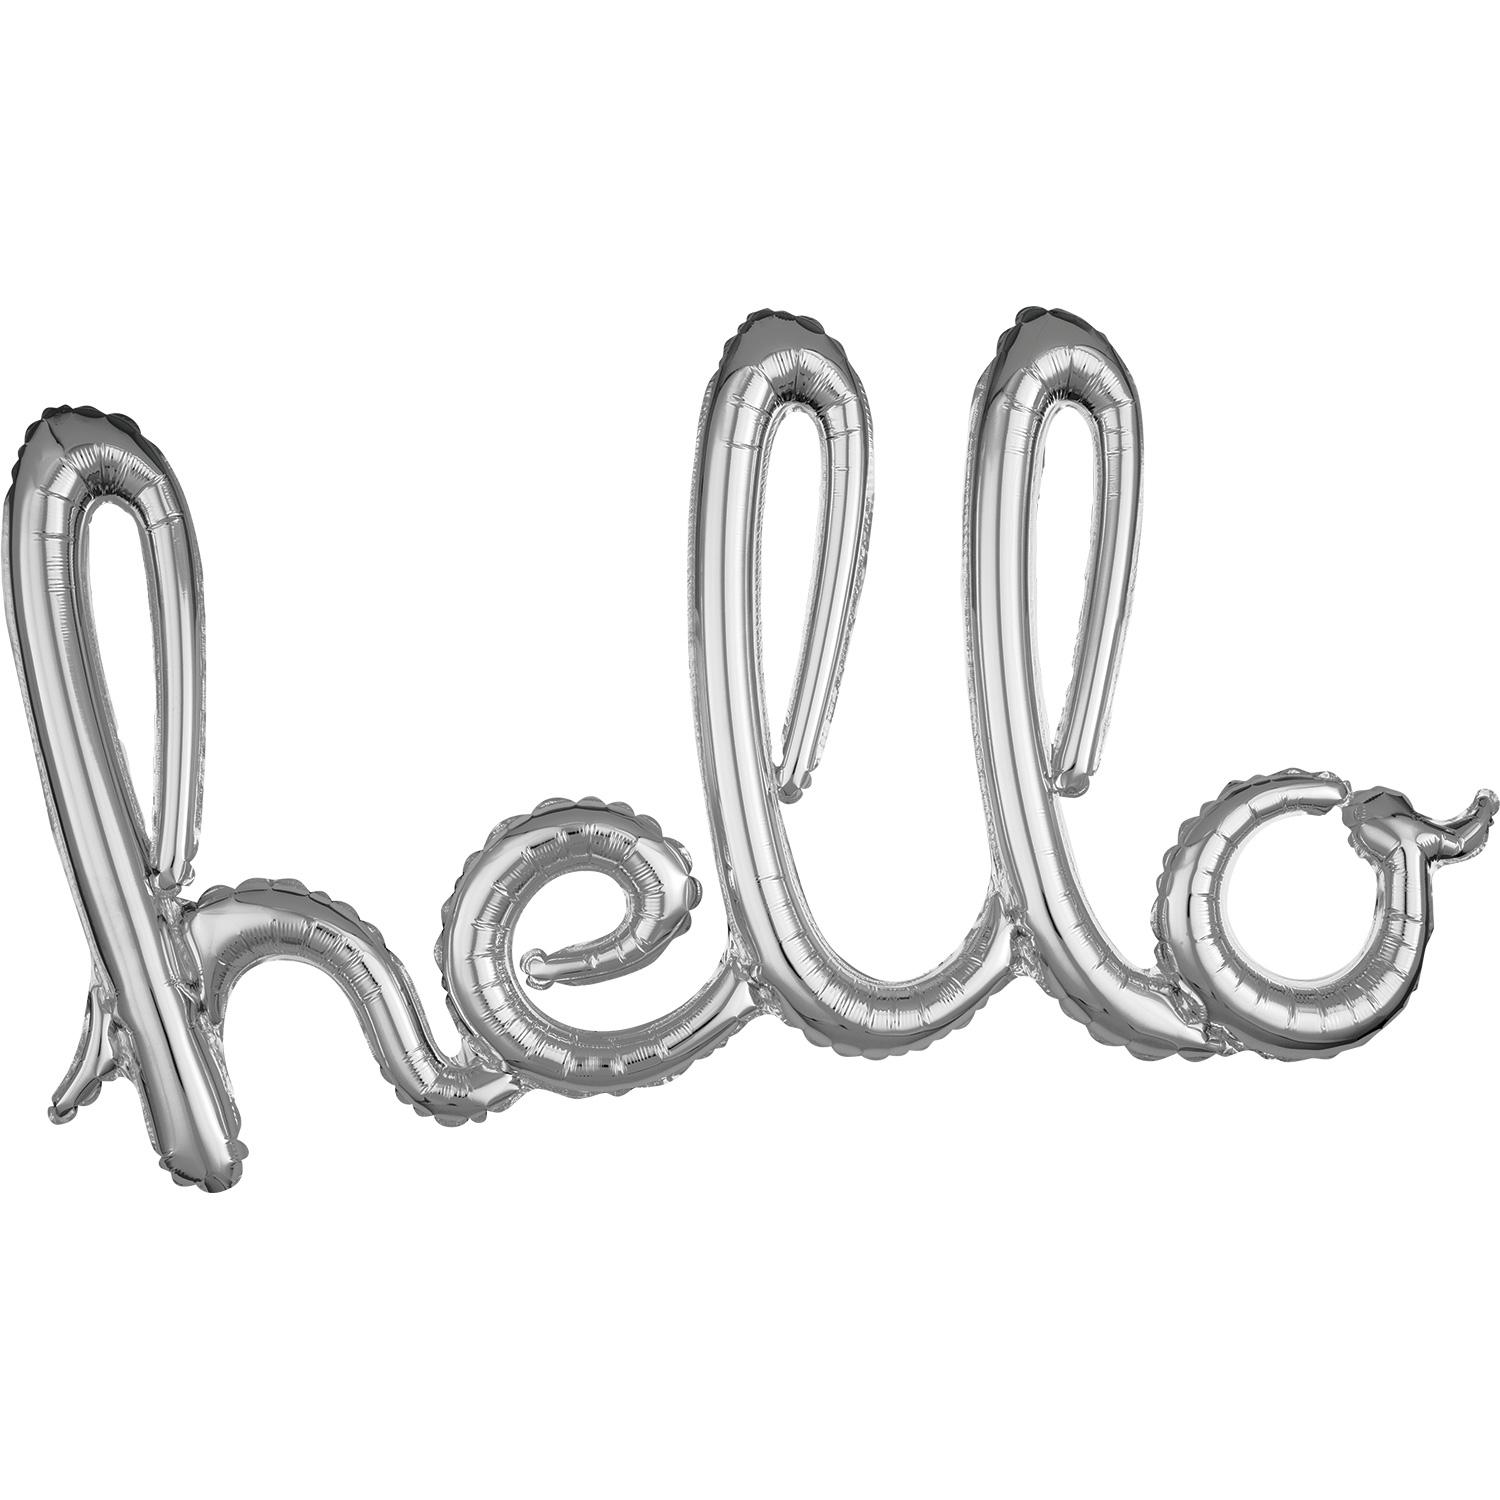 Silver Hello Script Phrase Foil Balloon Balloons & Streamers - Party Centre - Party Centre